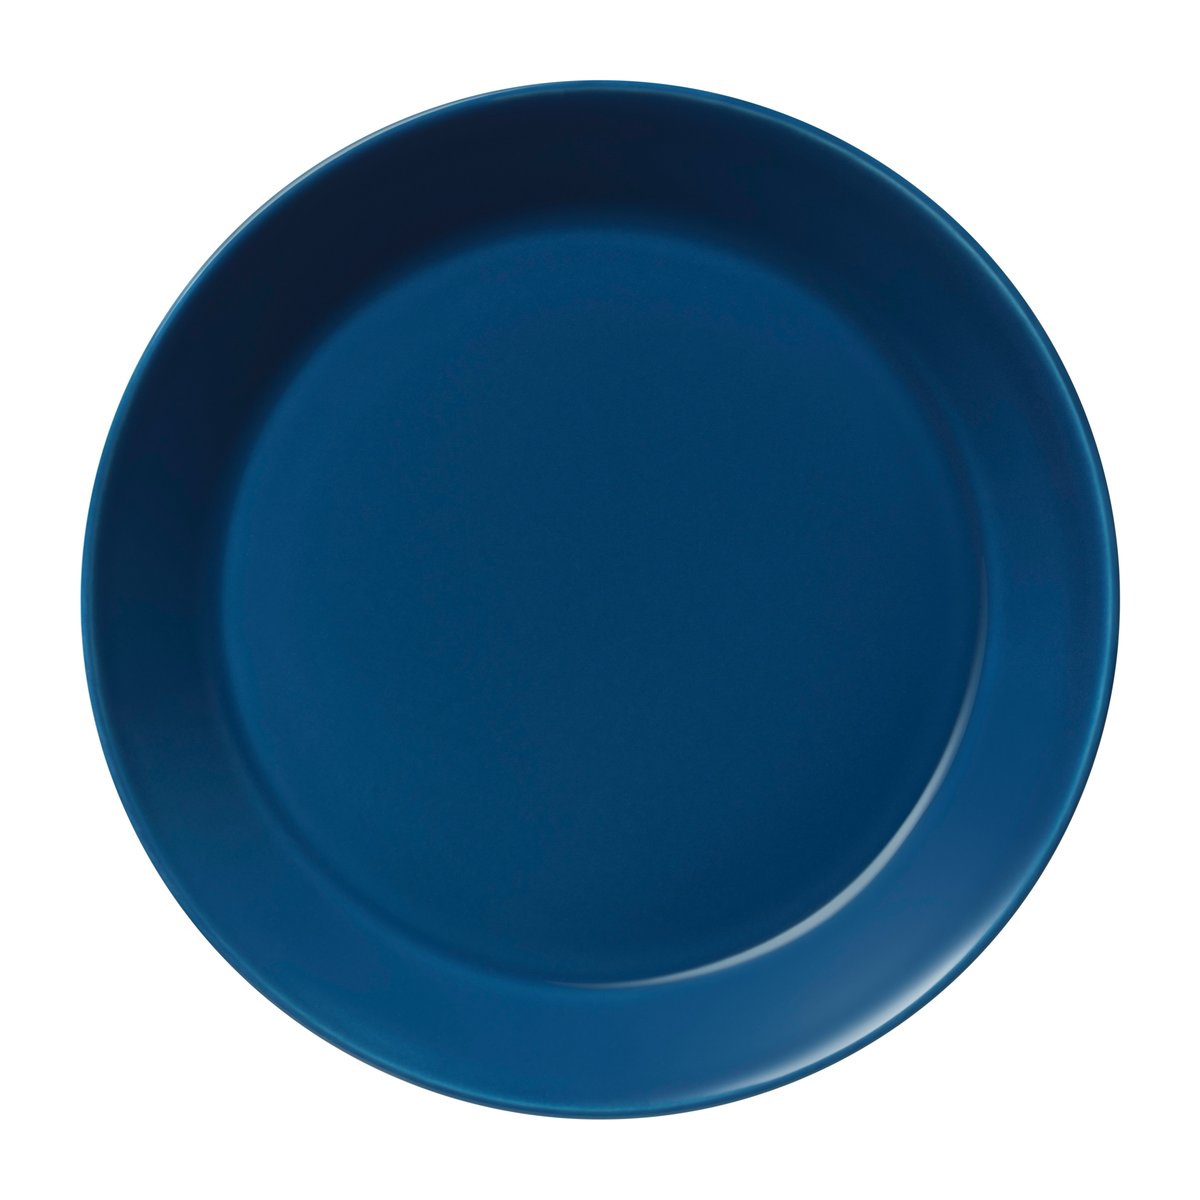 Iittala Teema tallerken 21 cm Vintage blå (6411923672450)